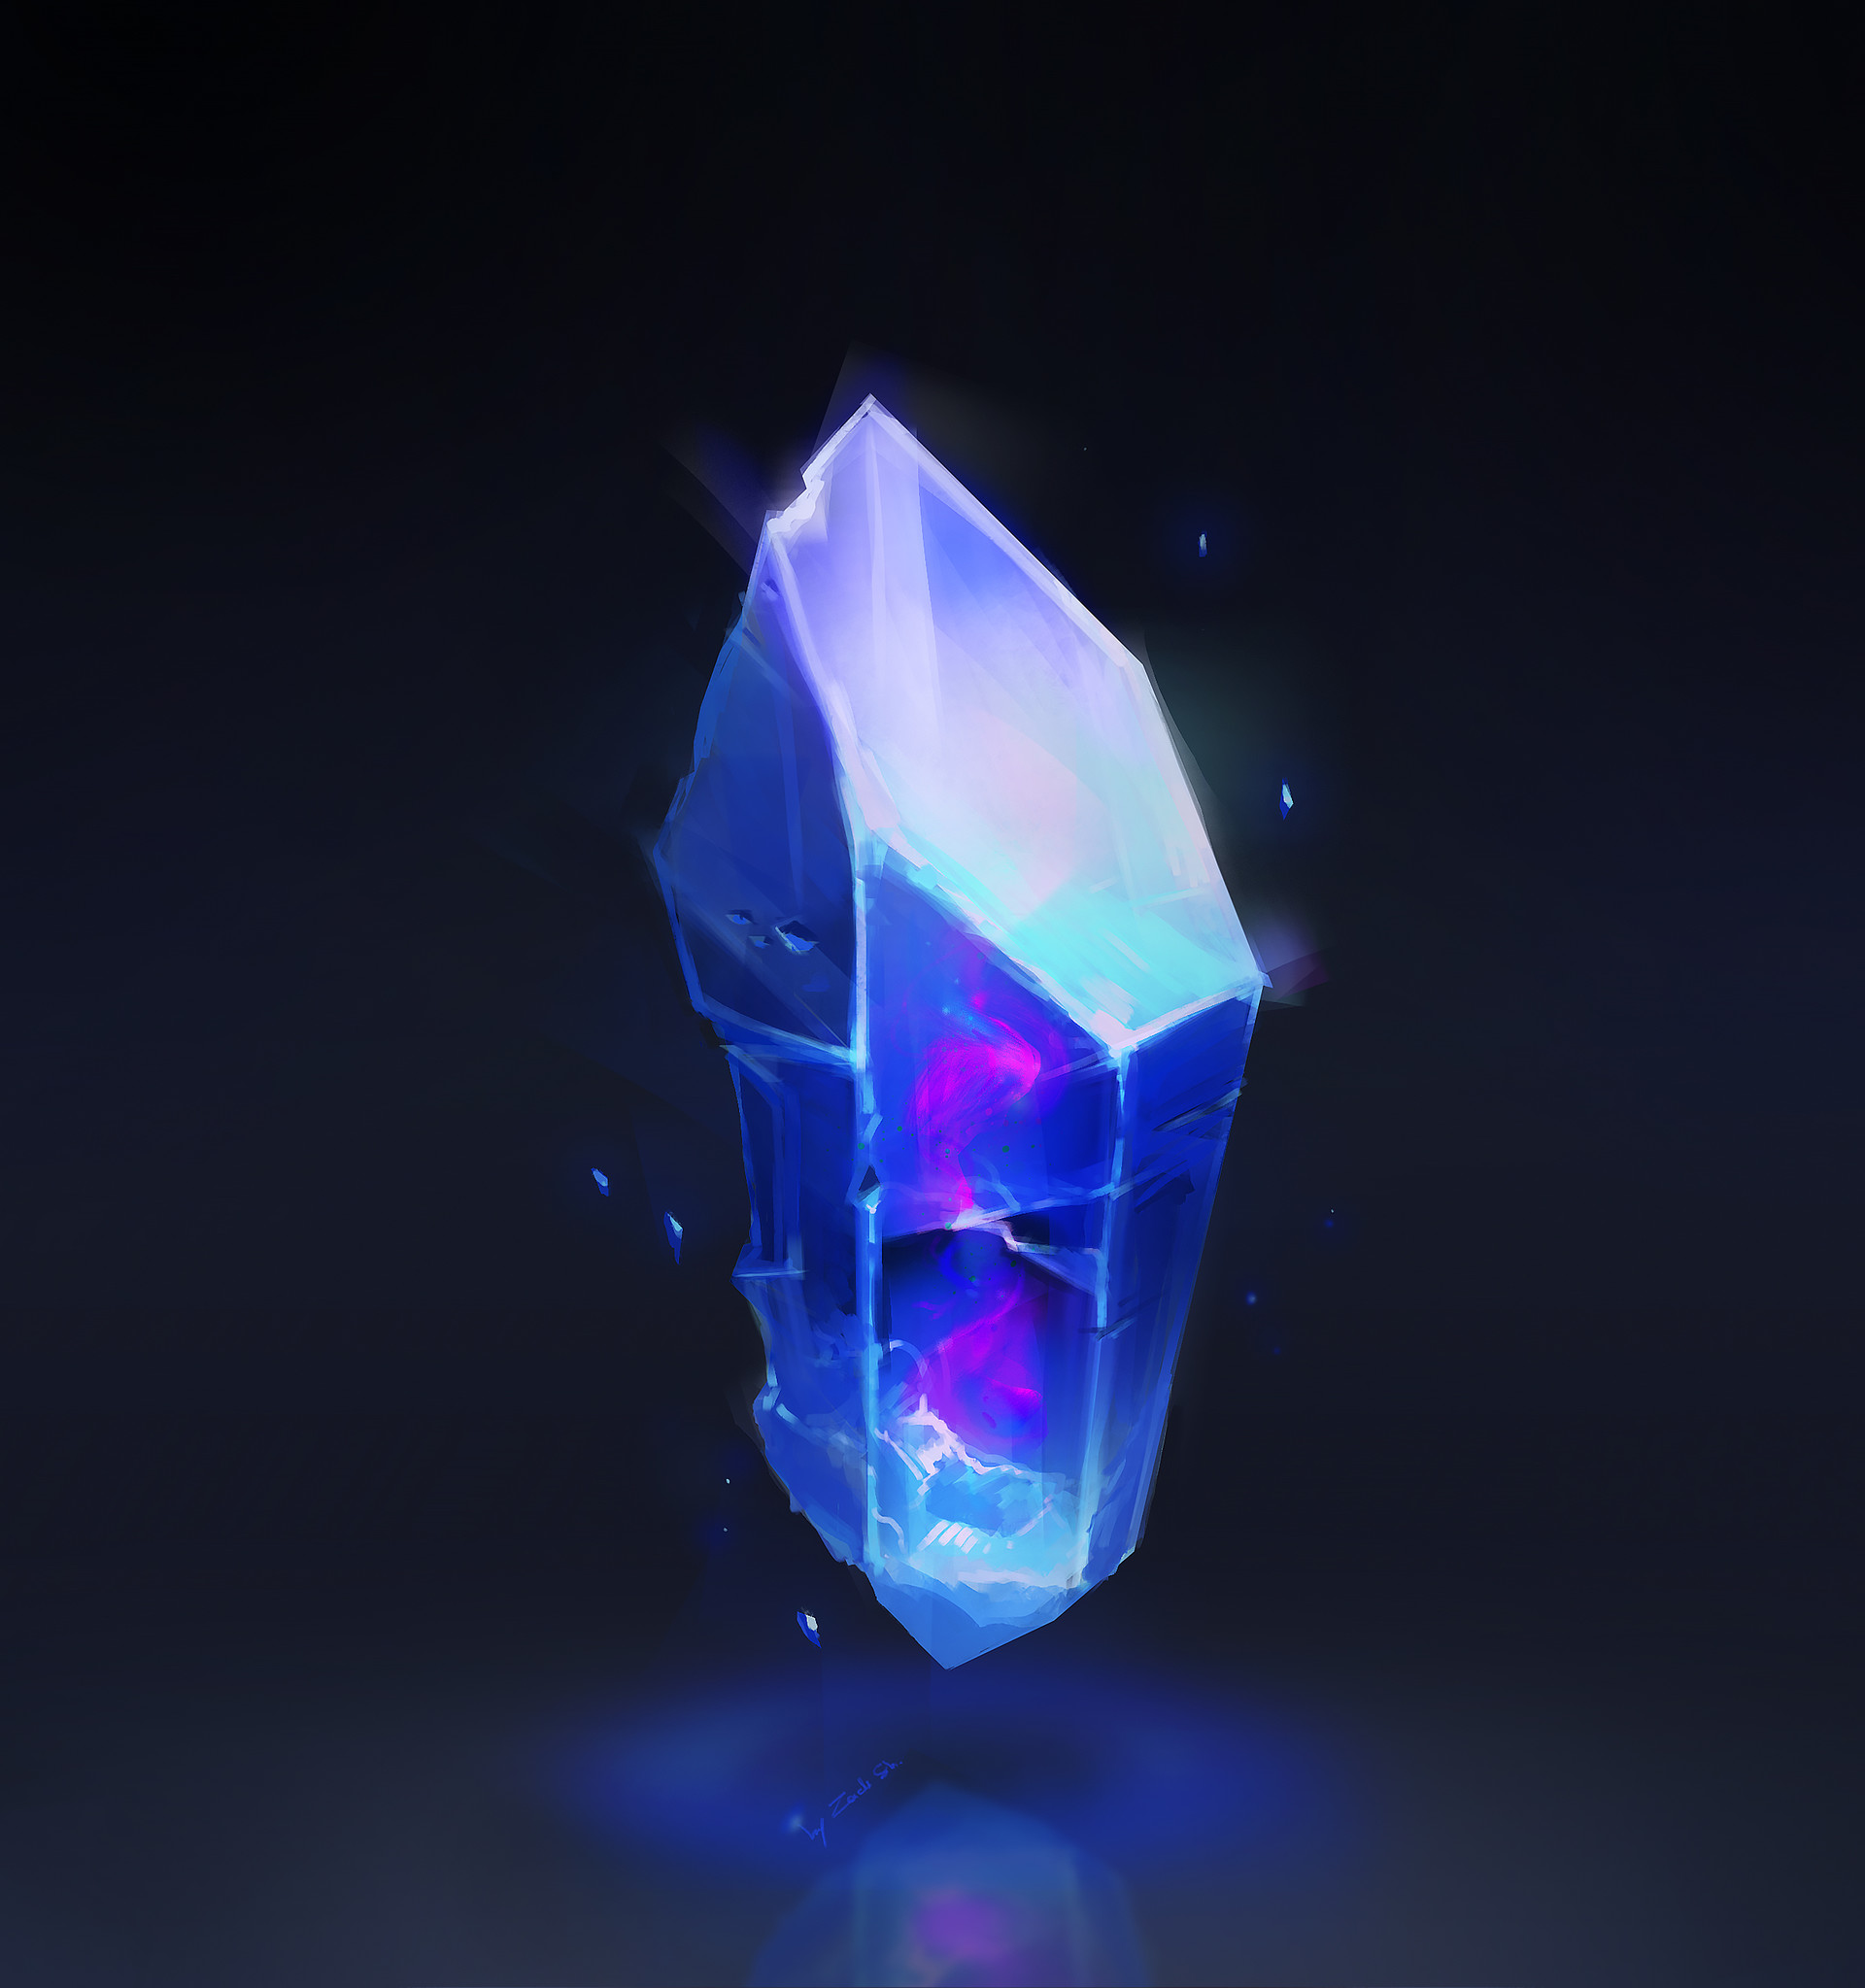 Crystal gaming